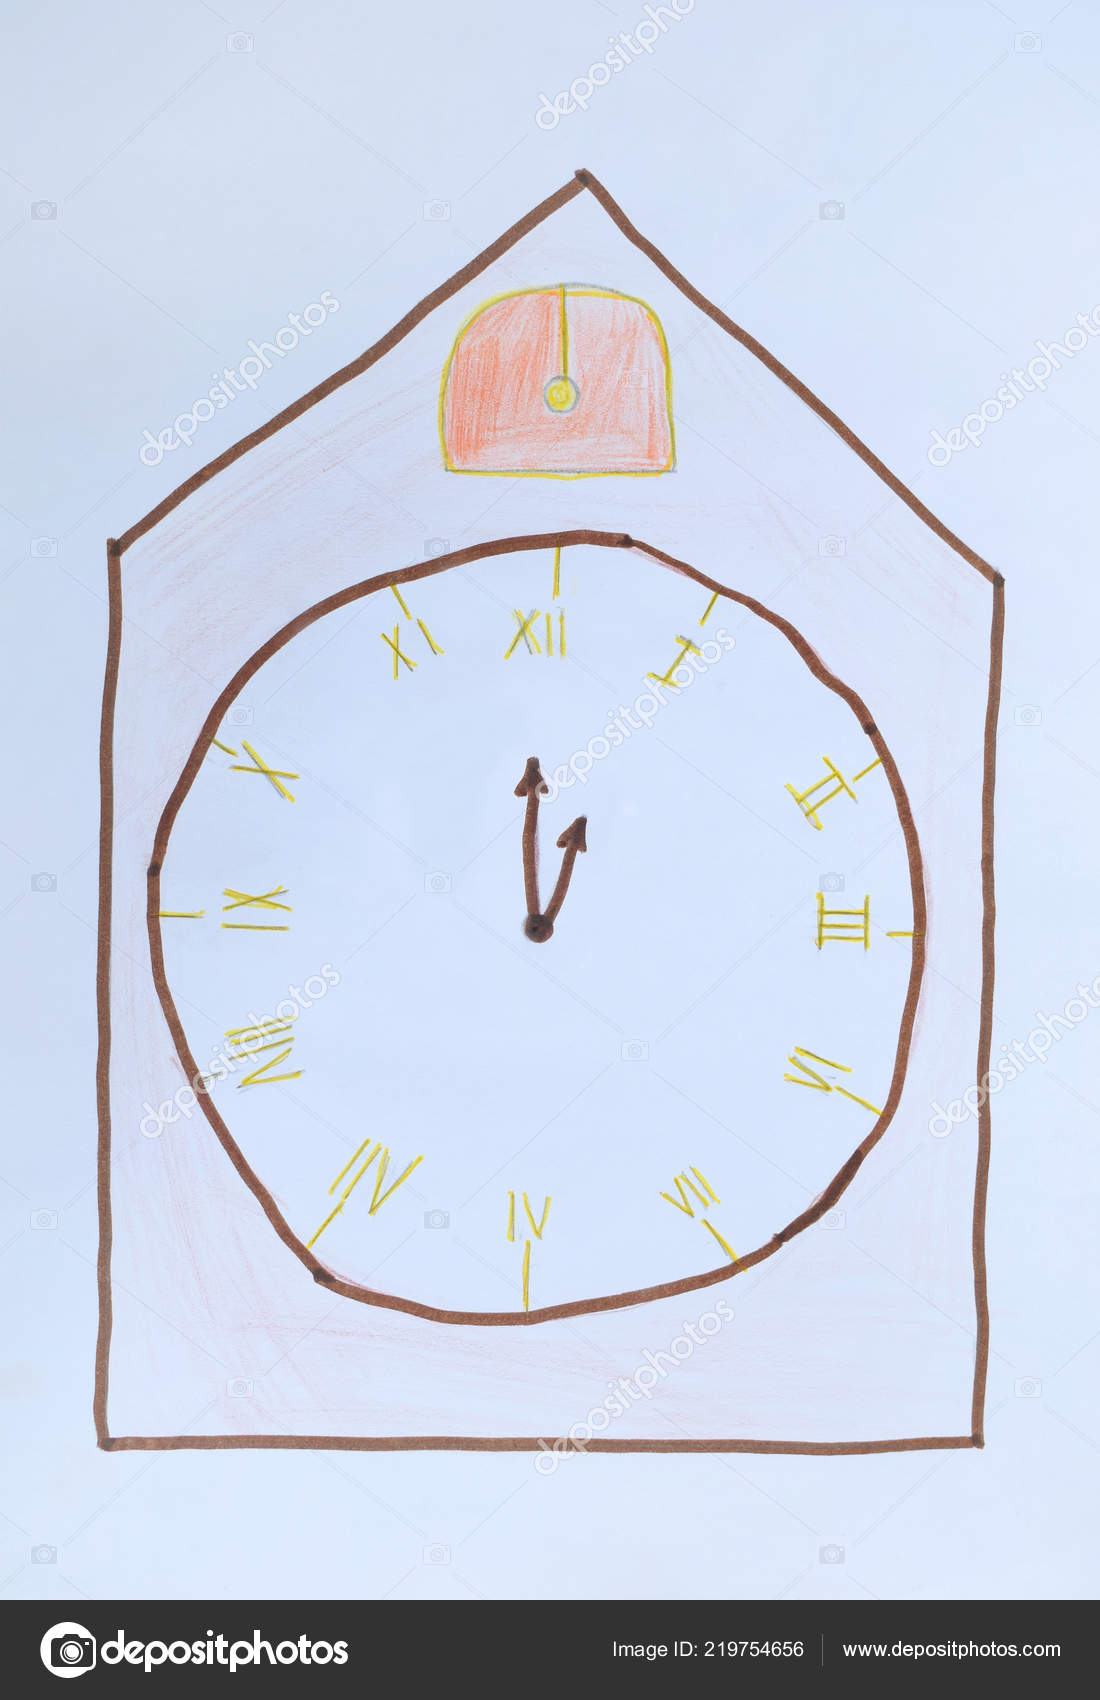 How to Draw a Clock - HelloArtsy